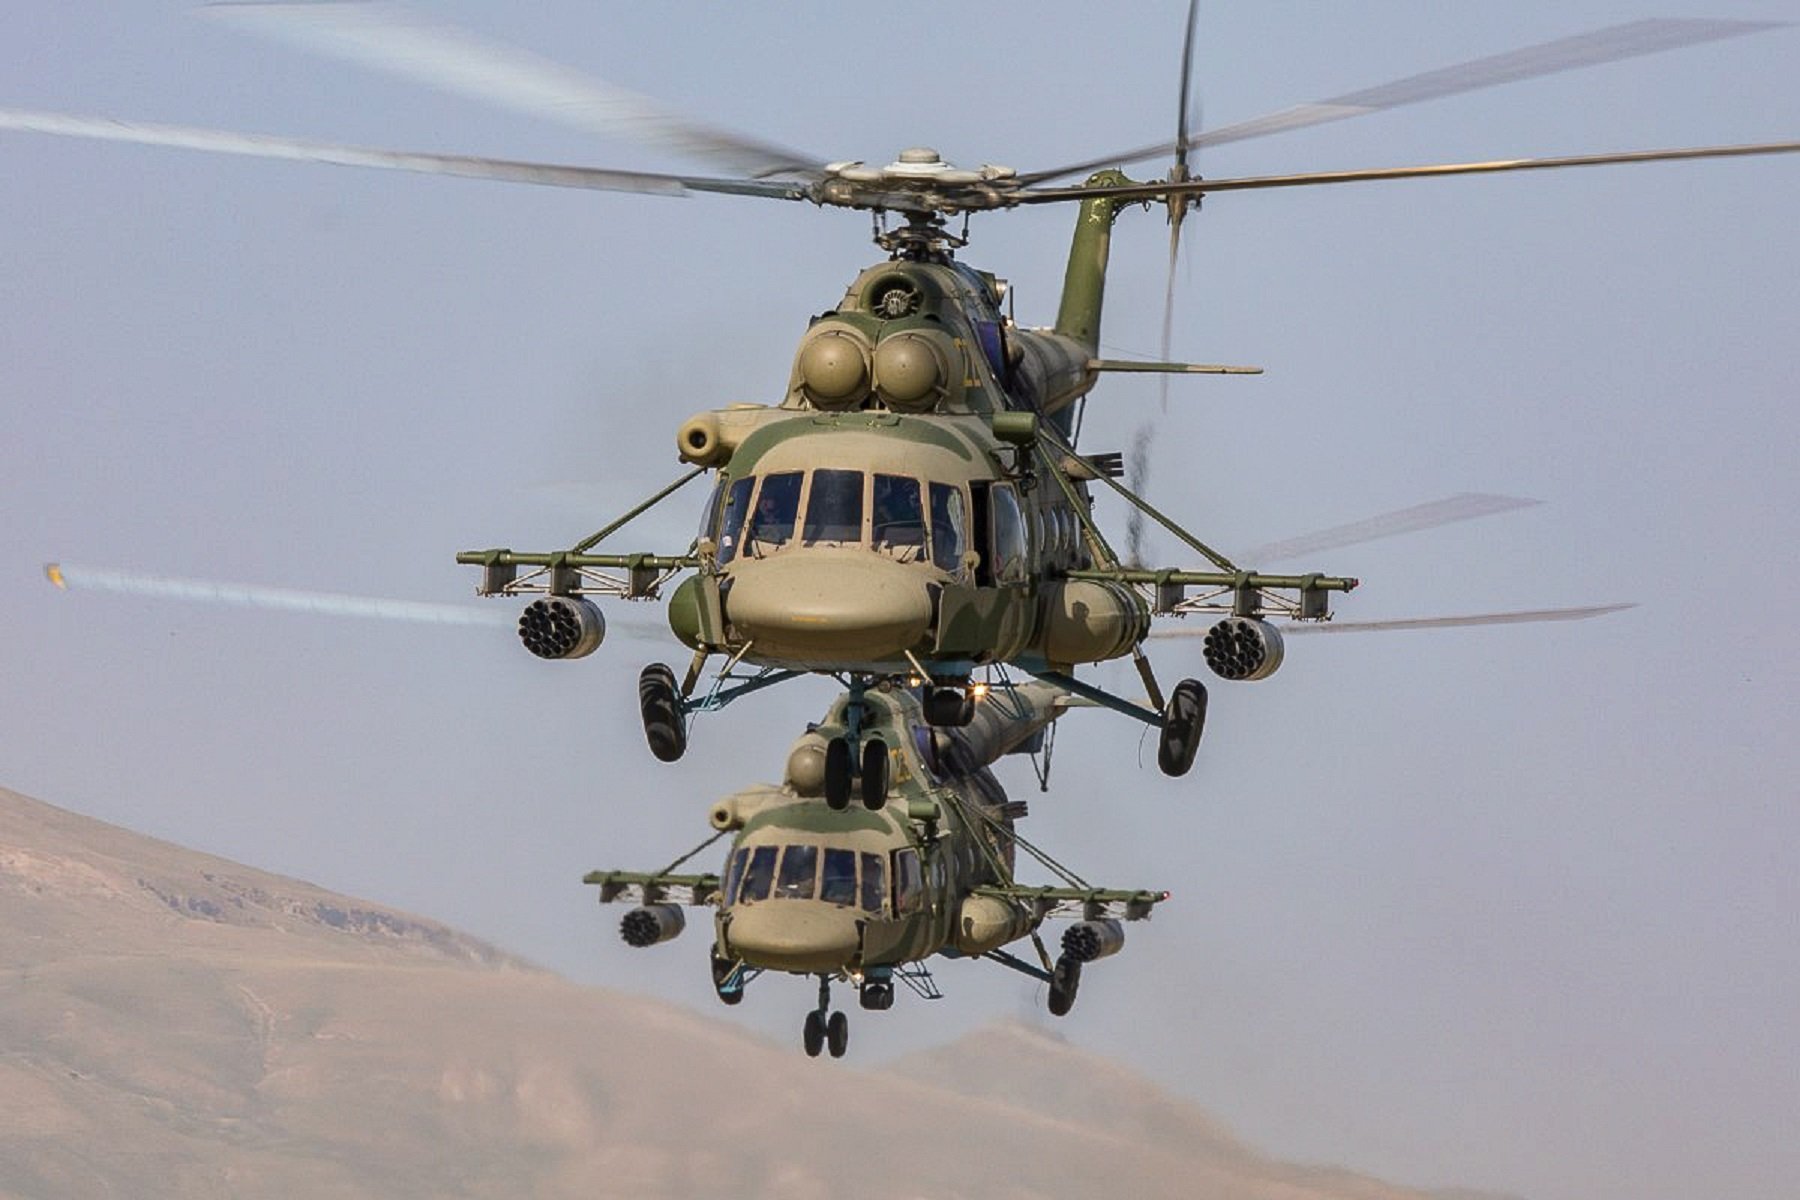 Nova escalada al conflicte de l'Artsakh: l'Azerbaidjan abat un helicòpter rus